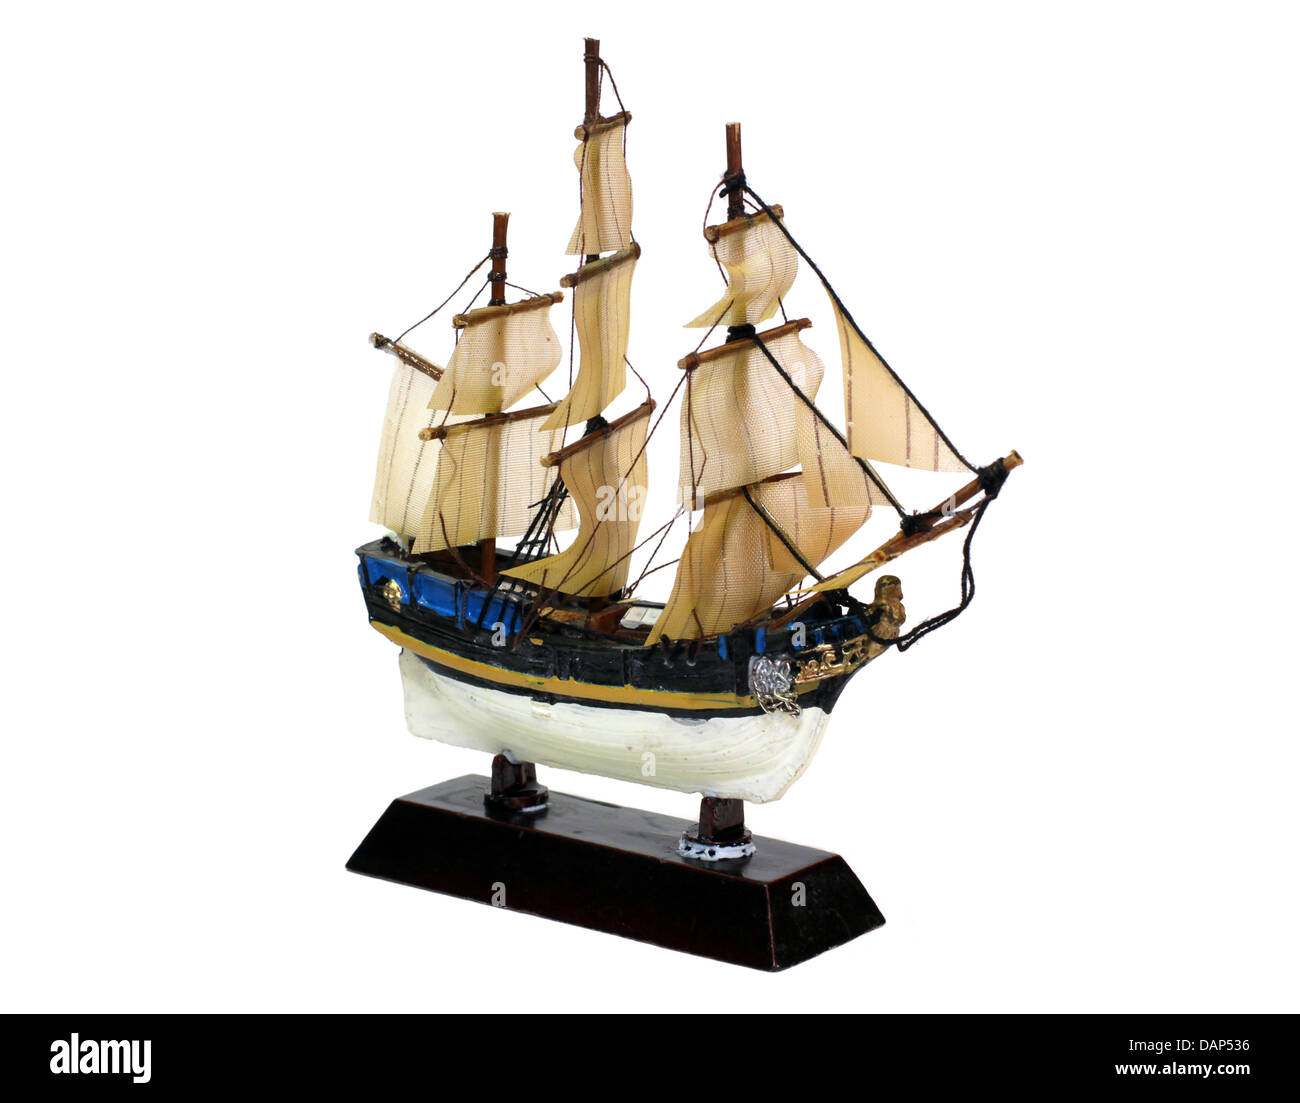 sailing vesse (ship) model isolated on white background Stock Photo